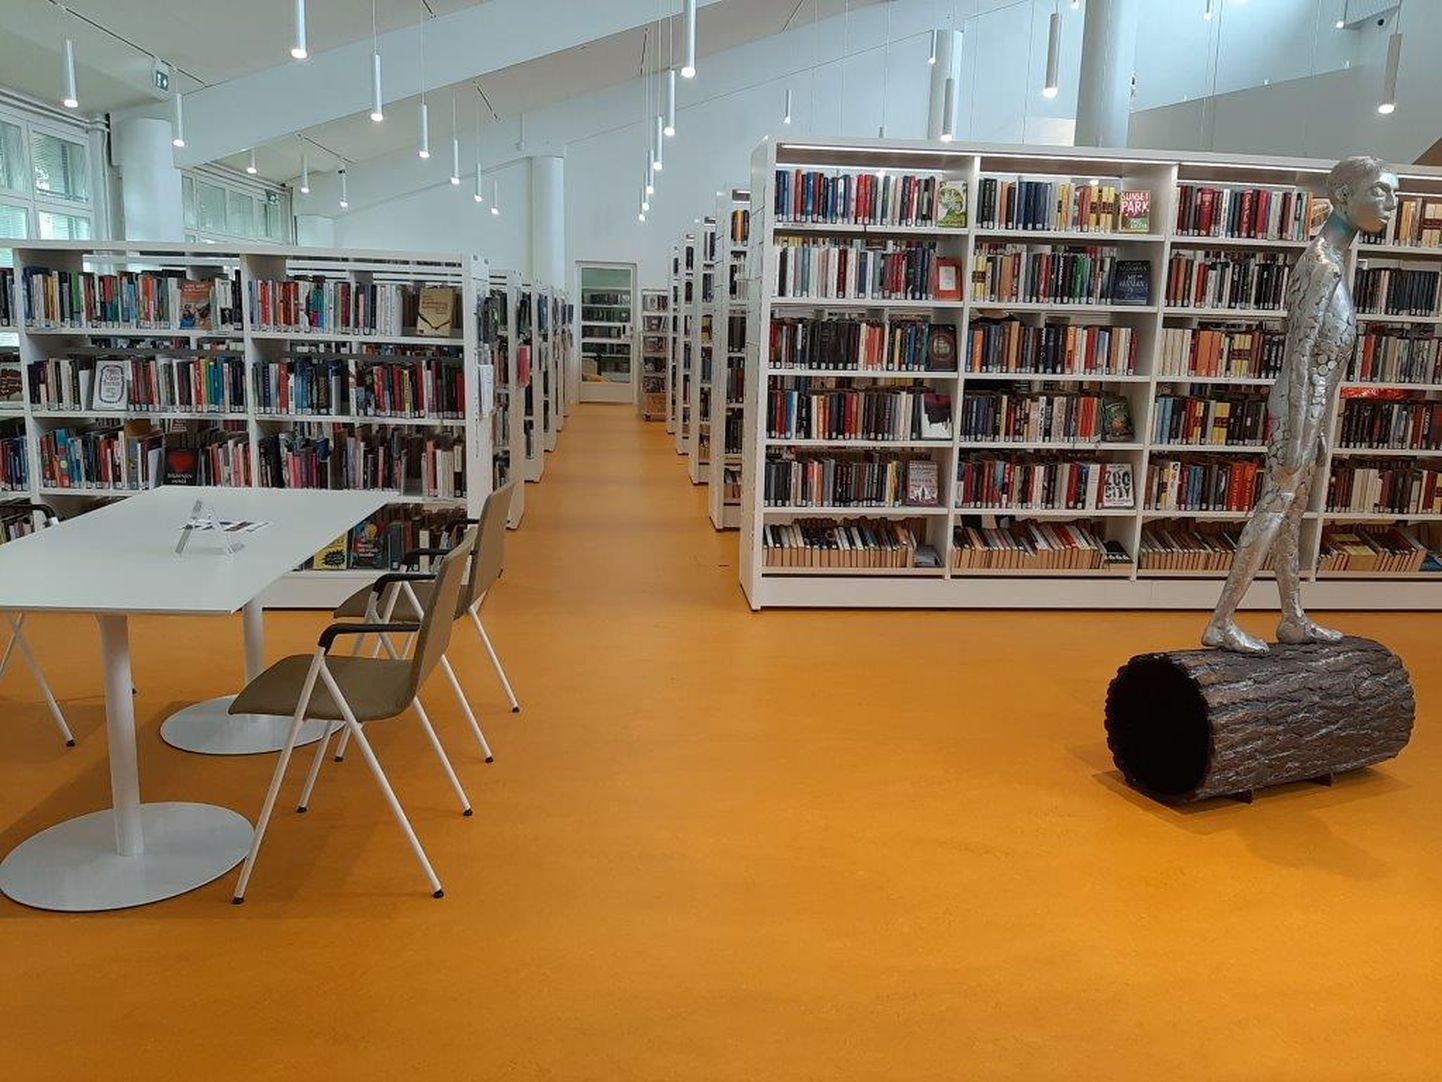 Sipoo raamatukogu on äsja renoveeritud ja jättis väga hea mulje.